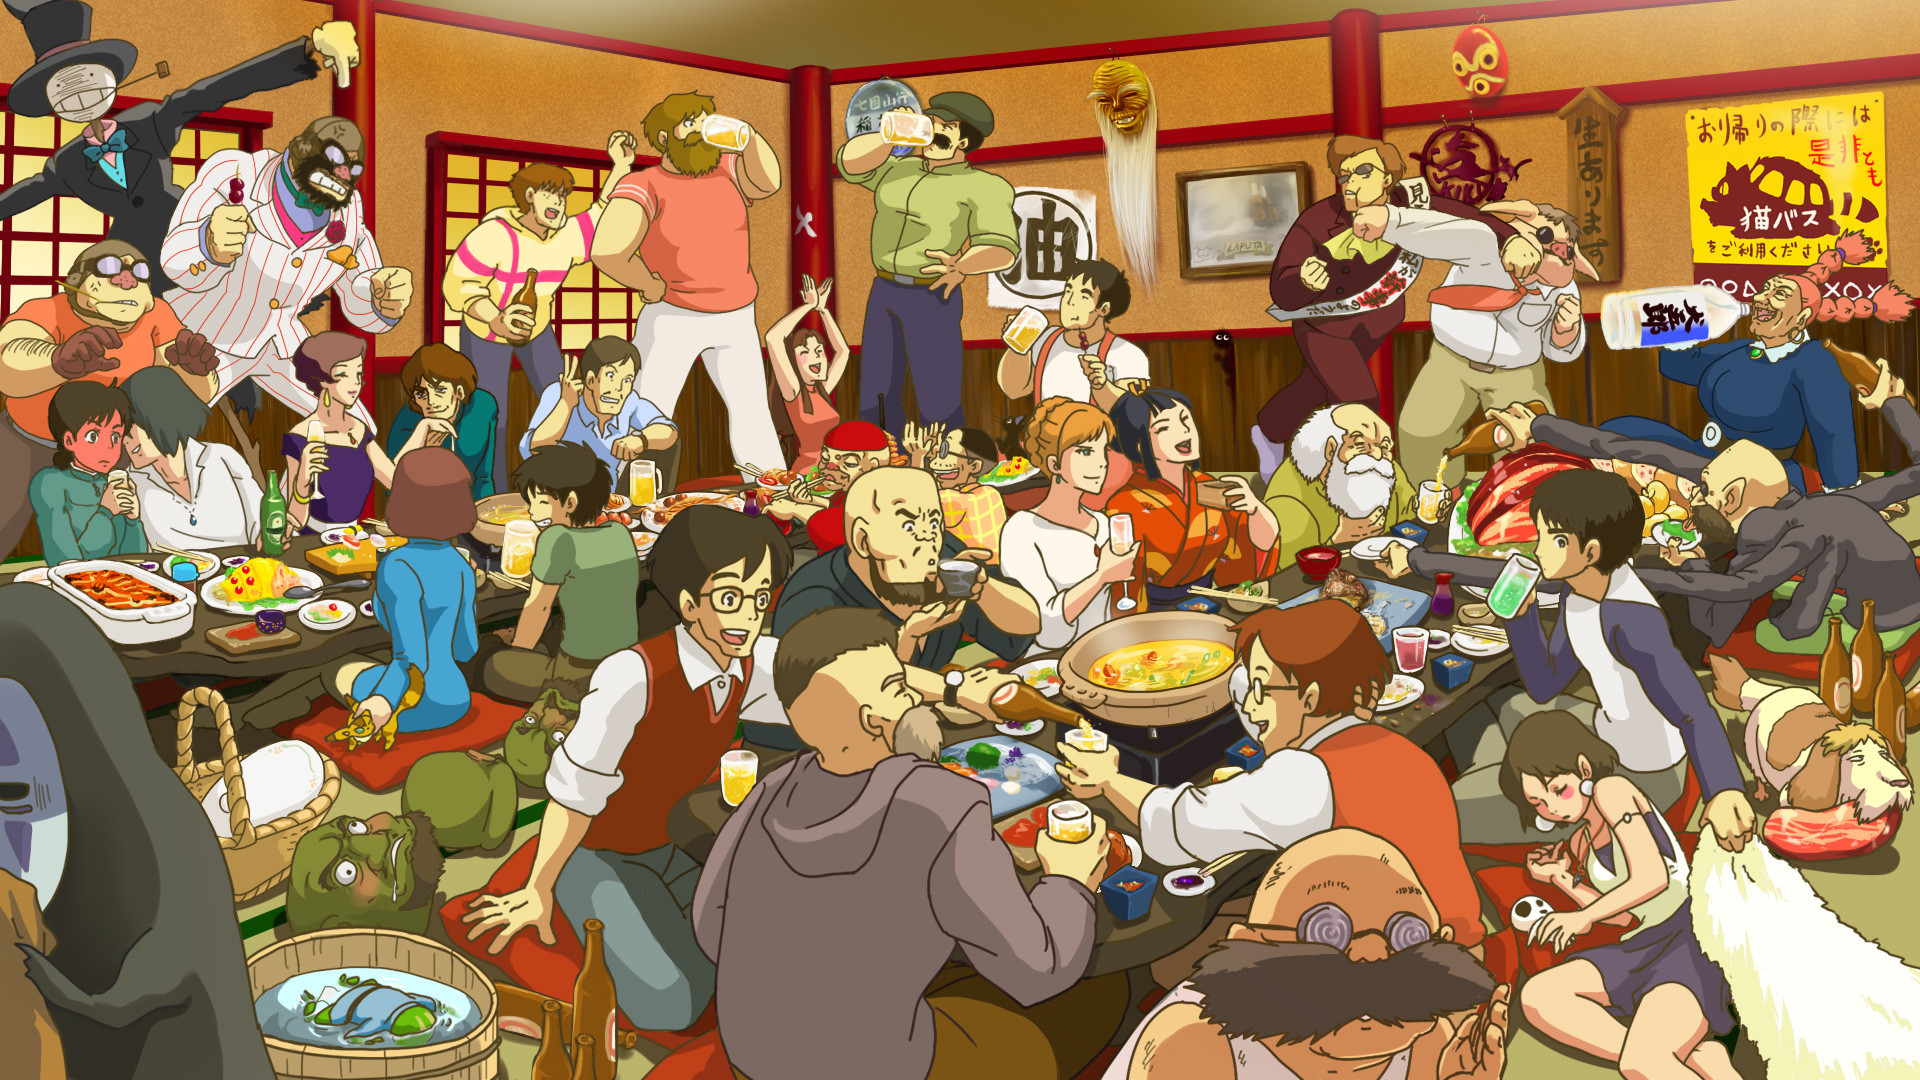 Studio Ghibli HD Wallpaper | 1920x1080 | ID:43592